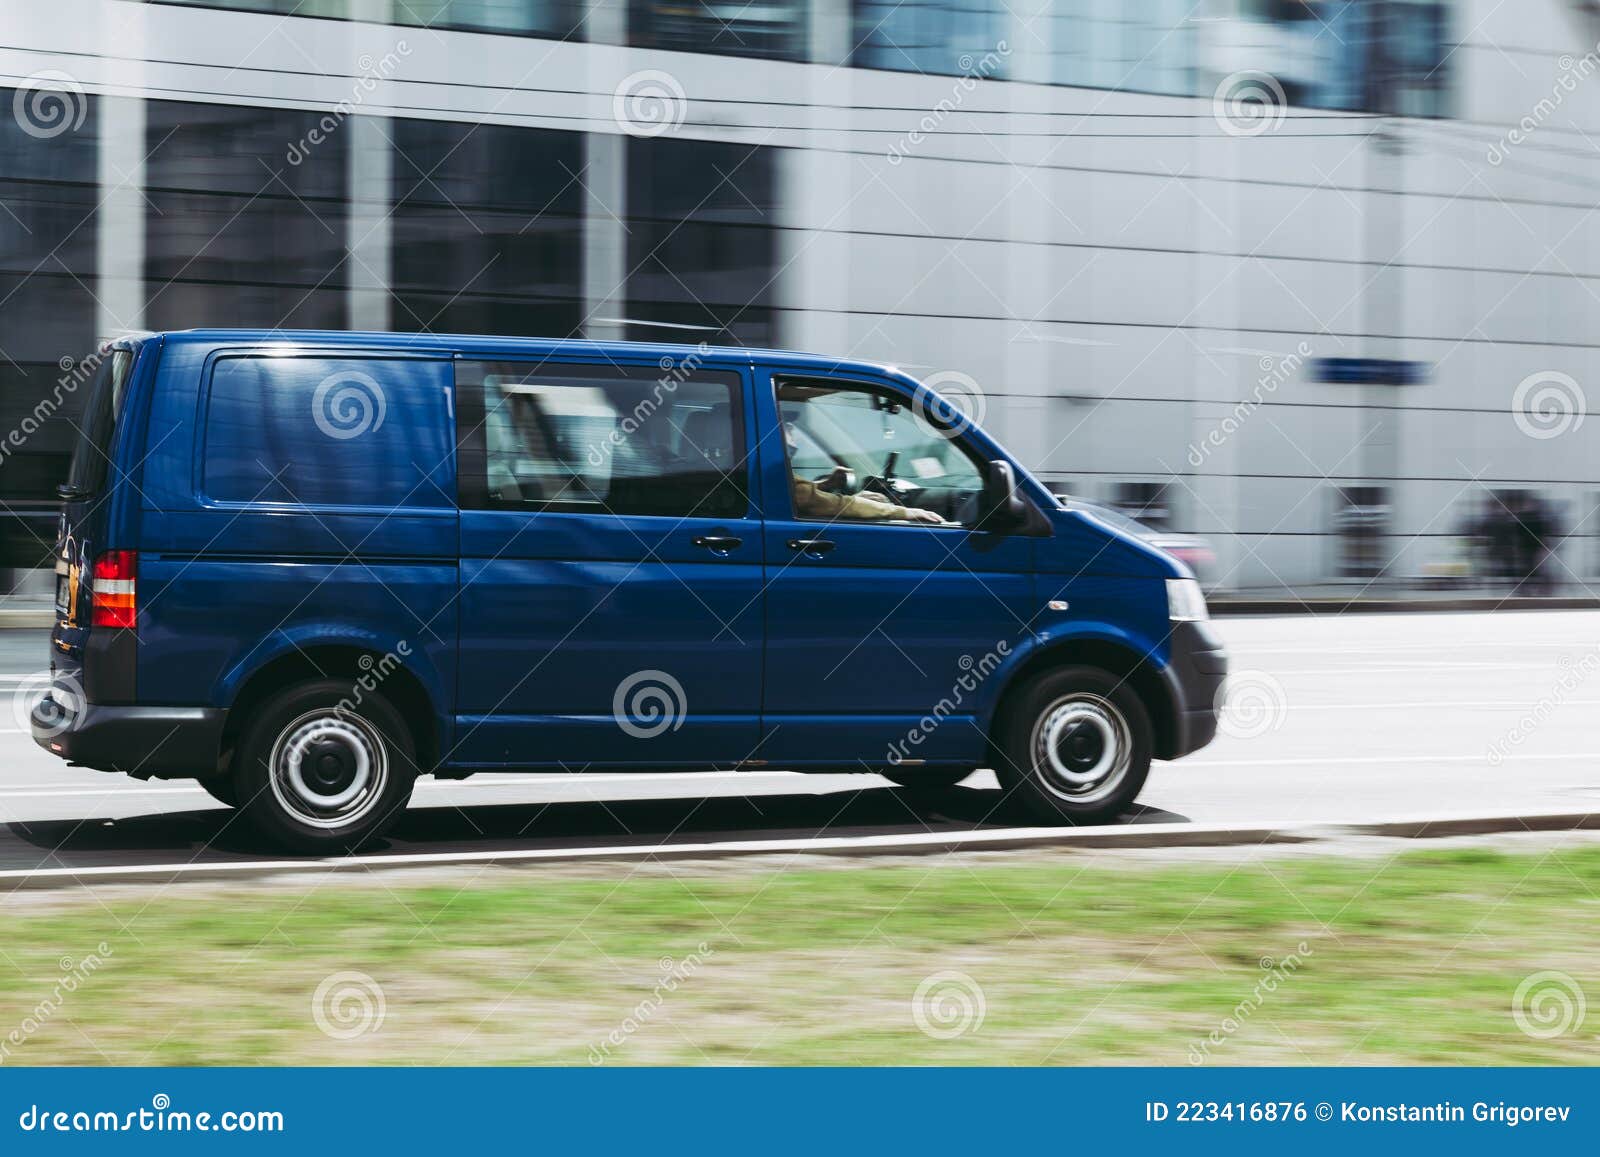 Volkswagen T5 Wordt Snel in Beweging Gebracht Op Stadsweg. " Blauwe Van Rides Op Straat ". Commerciële Auto in Snelle Redactionele Foto - Image of klasse, stad: